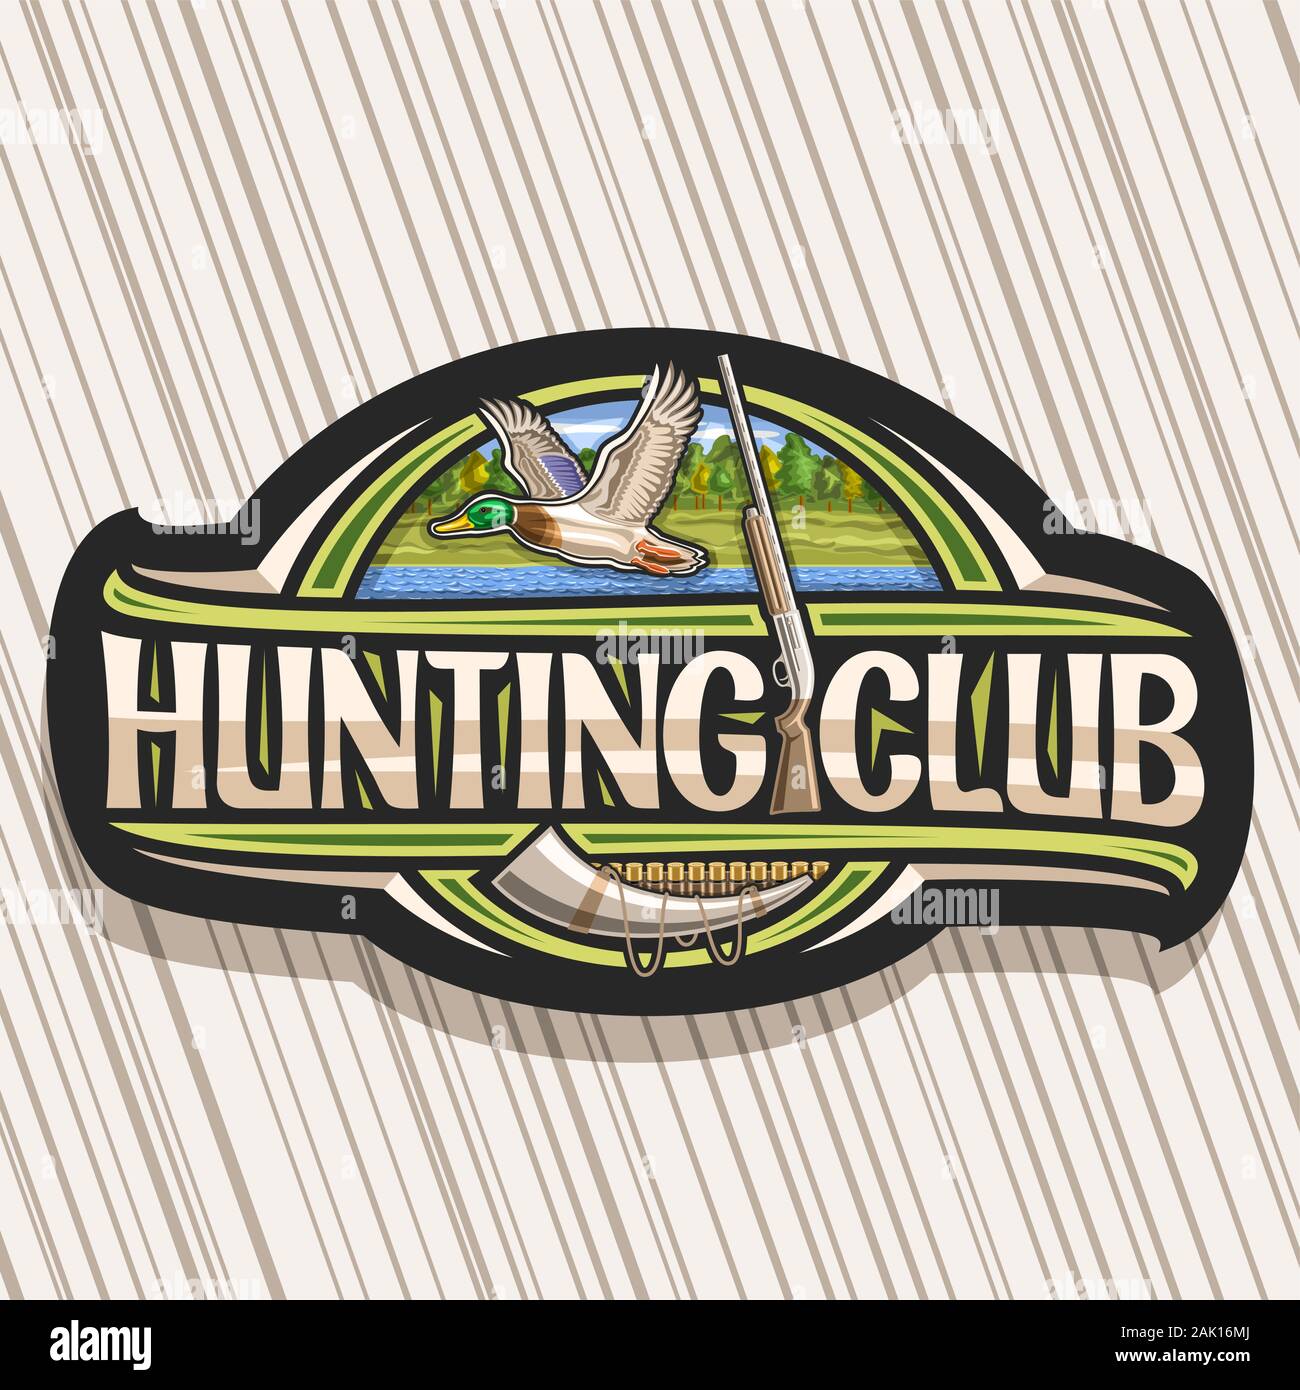 Logo Vector pour la chasse Club, decorative sign board avec illustration de canard mâle en vol sur fond d'arbres et de vieux fusil, symbole moderne pour le canard hu Illustration de Vecteur